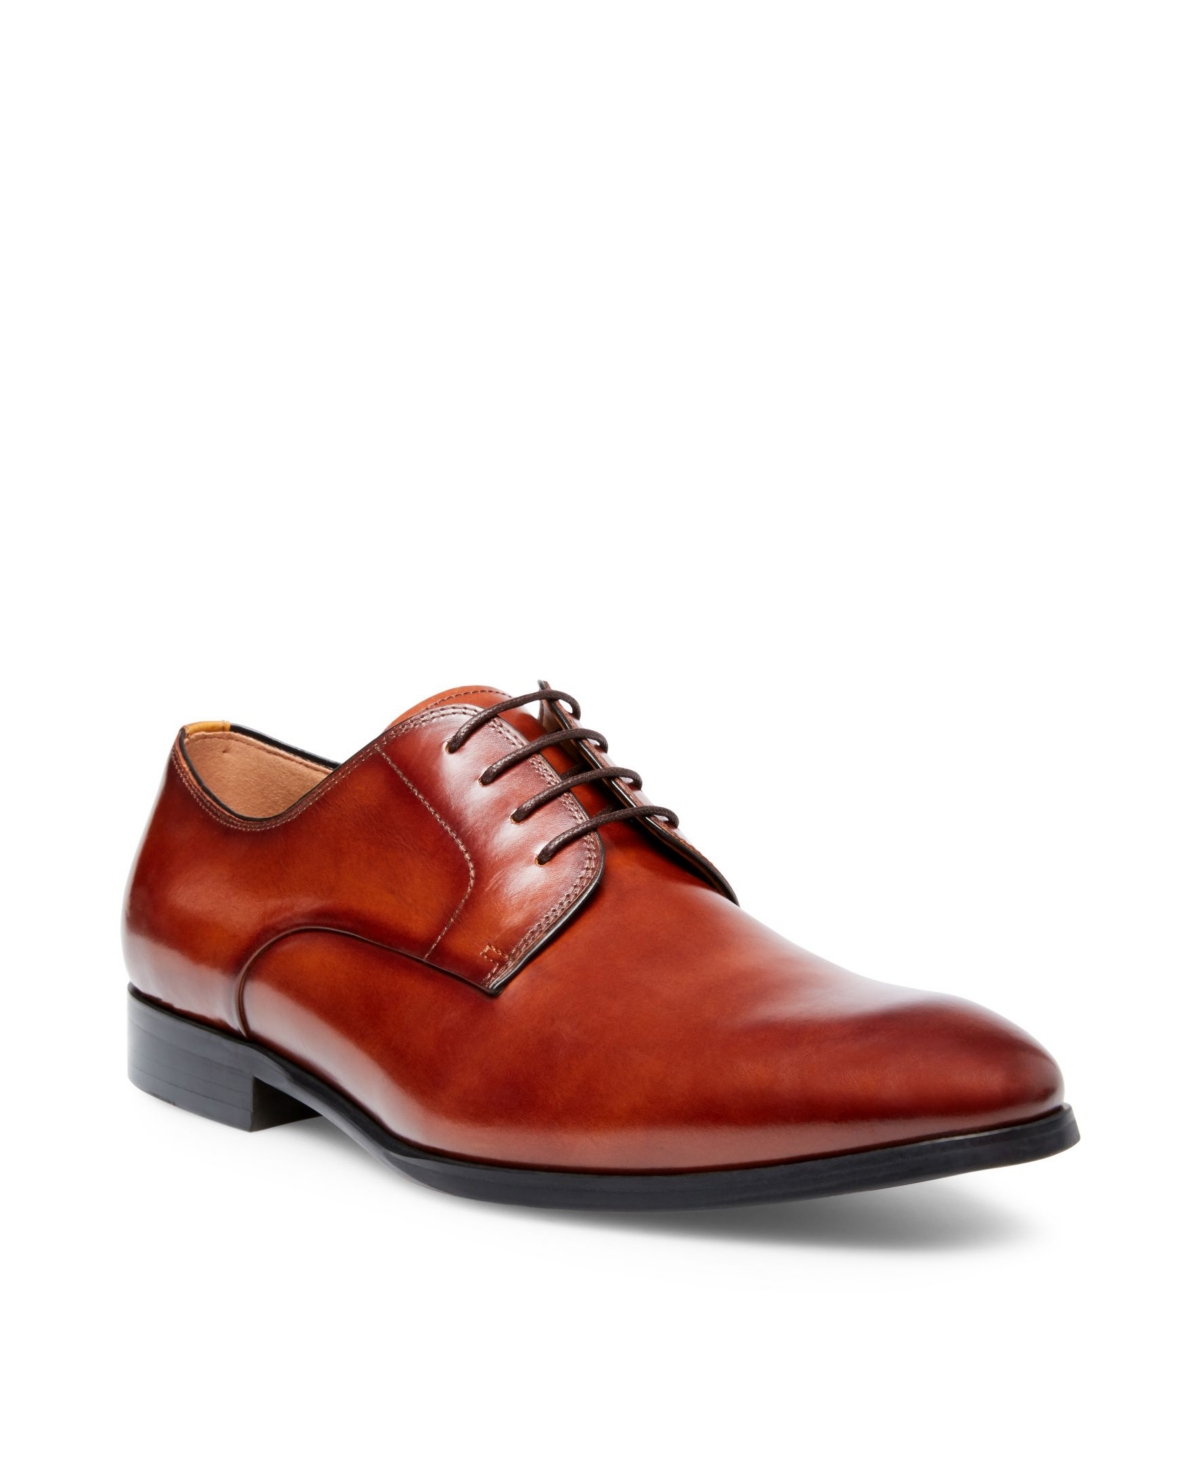 Men's Parsens Oxford Shoes - Tan Leather